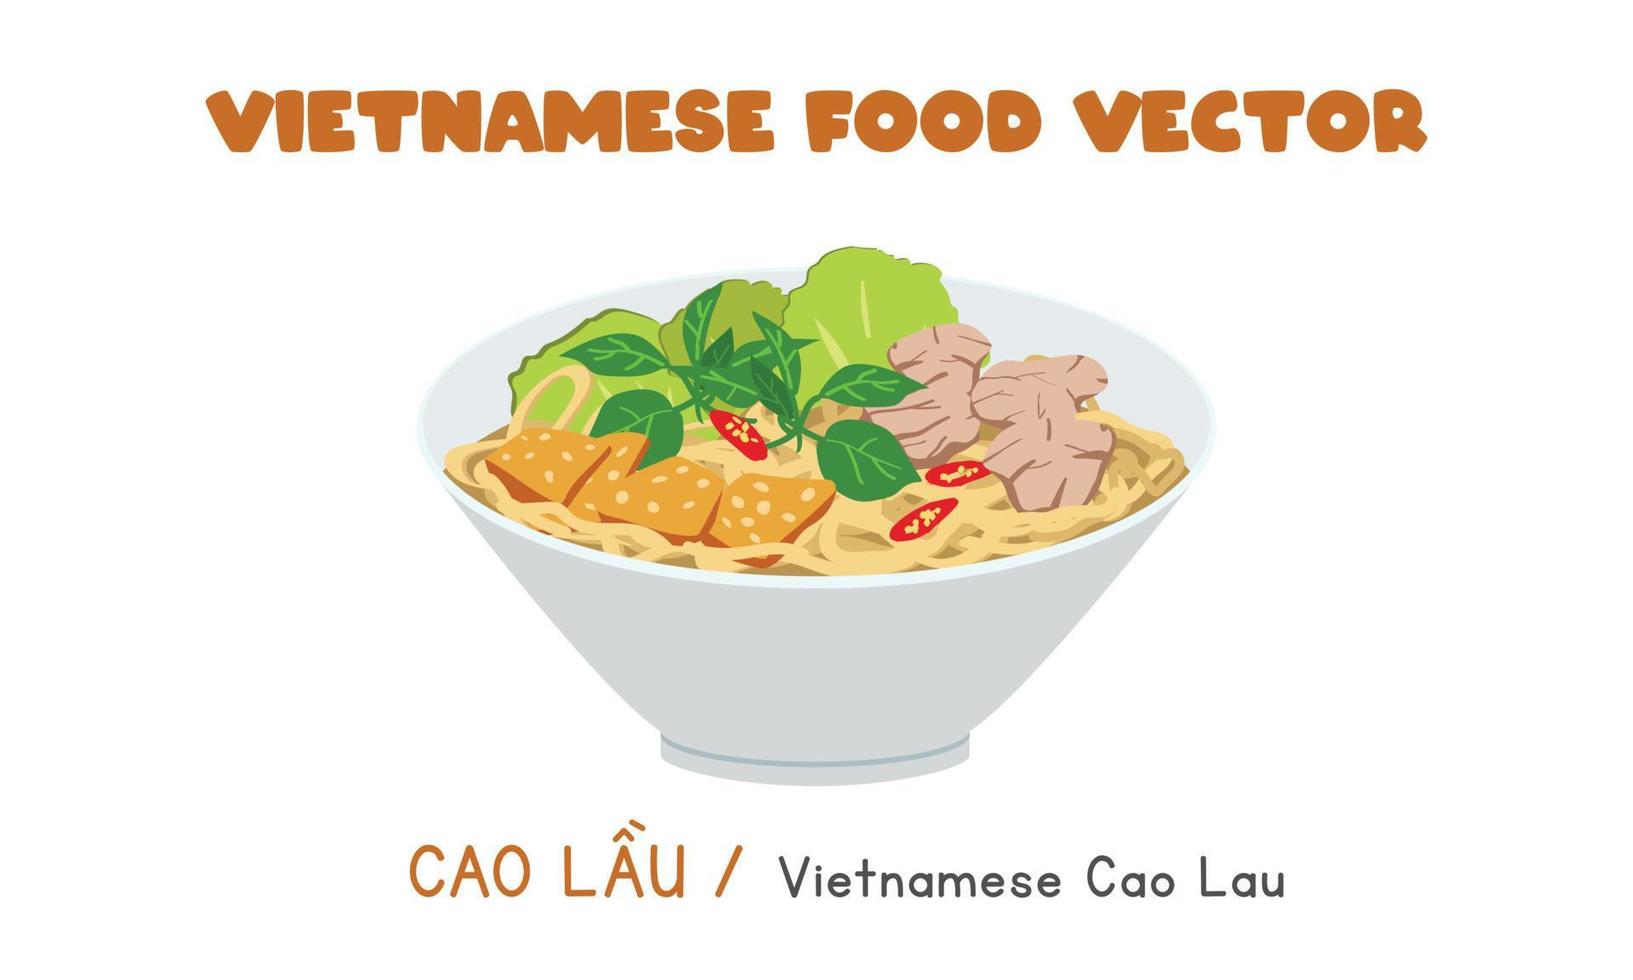 Fideos cao lau vietnamitas con diseño de vector plano de cerdo y verduras. cao lau clipart estilo de dibujos animados. comida asiática. cocina vietnamita